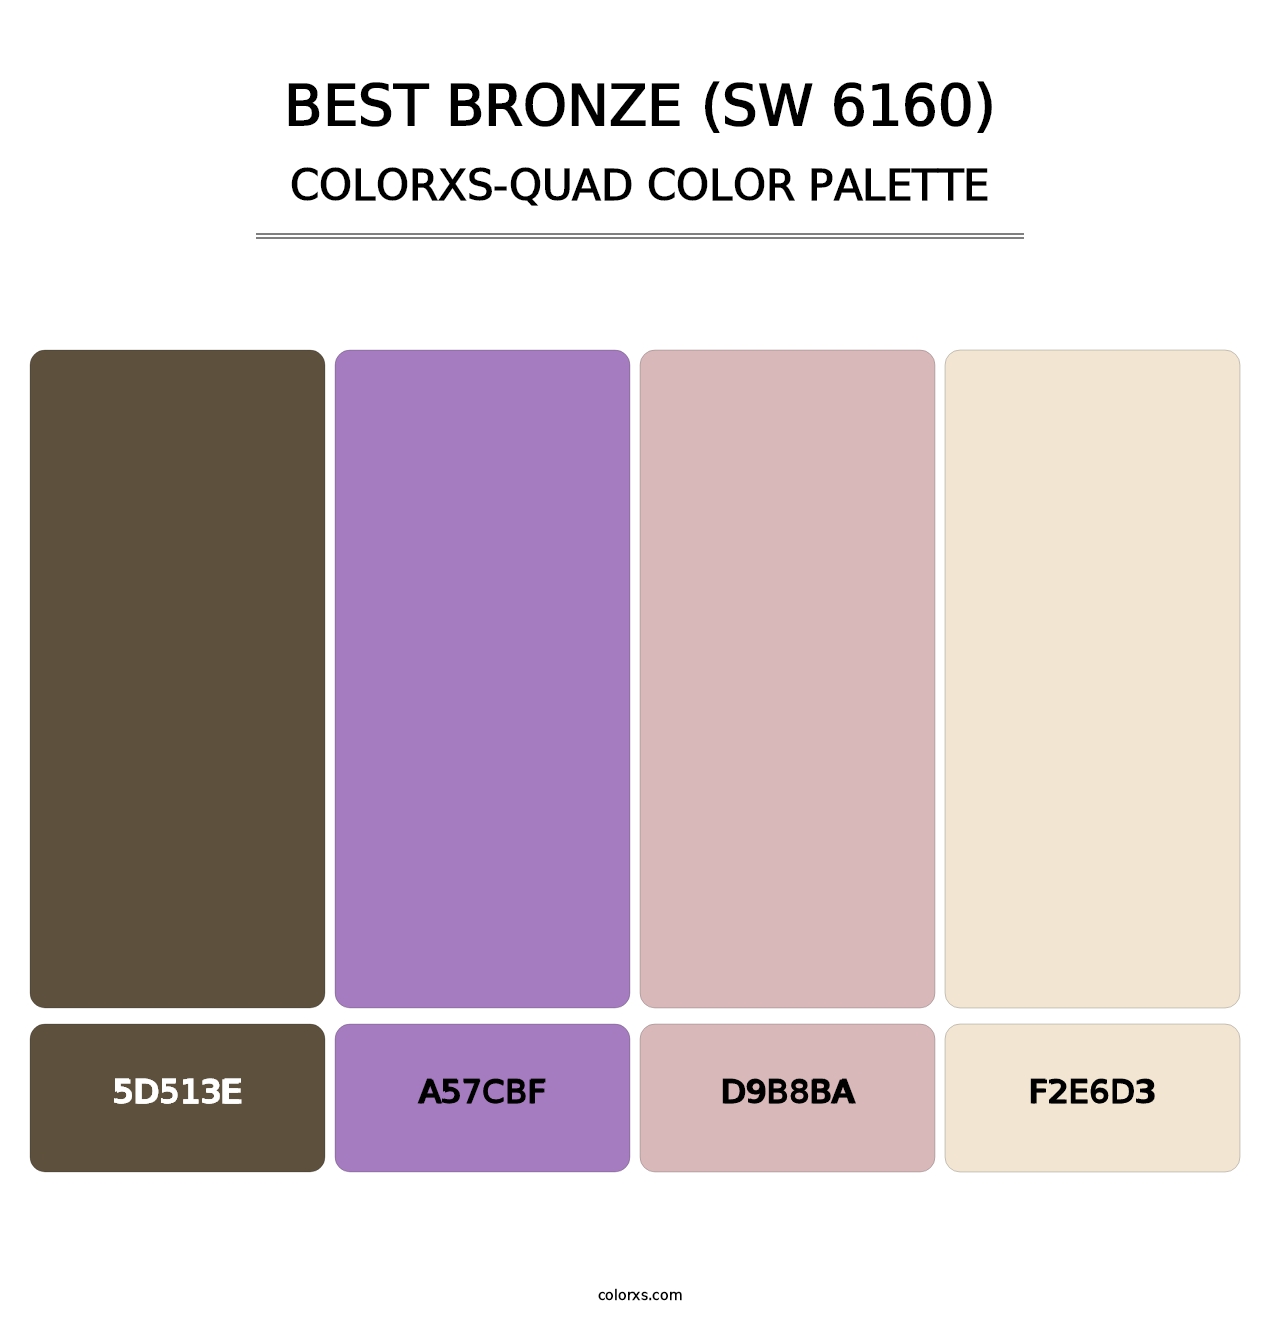 Best Bronze (SW 6160) - Colorxs Quad Palette